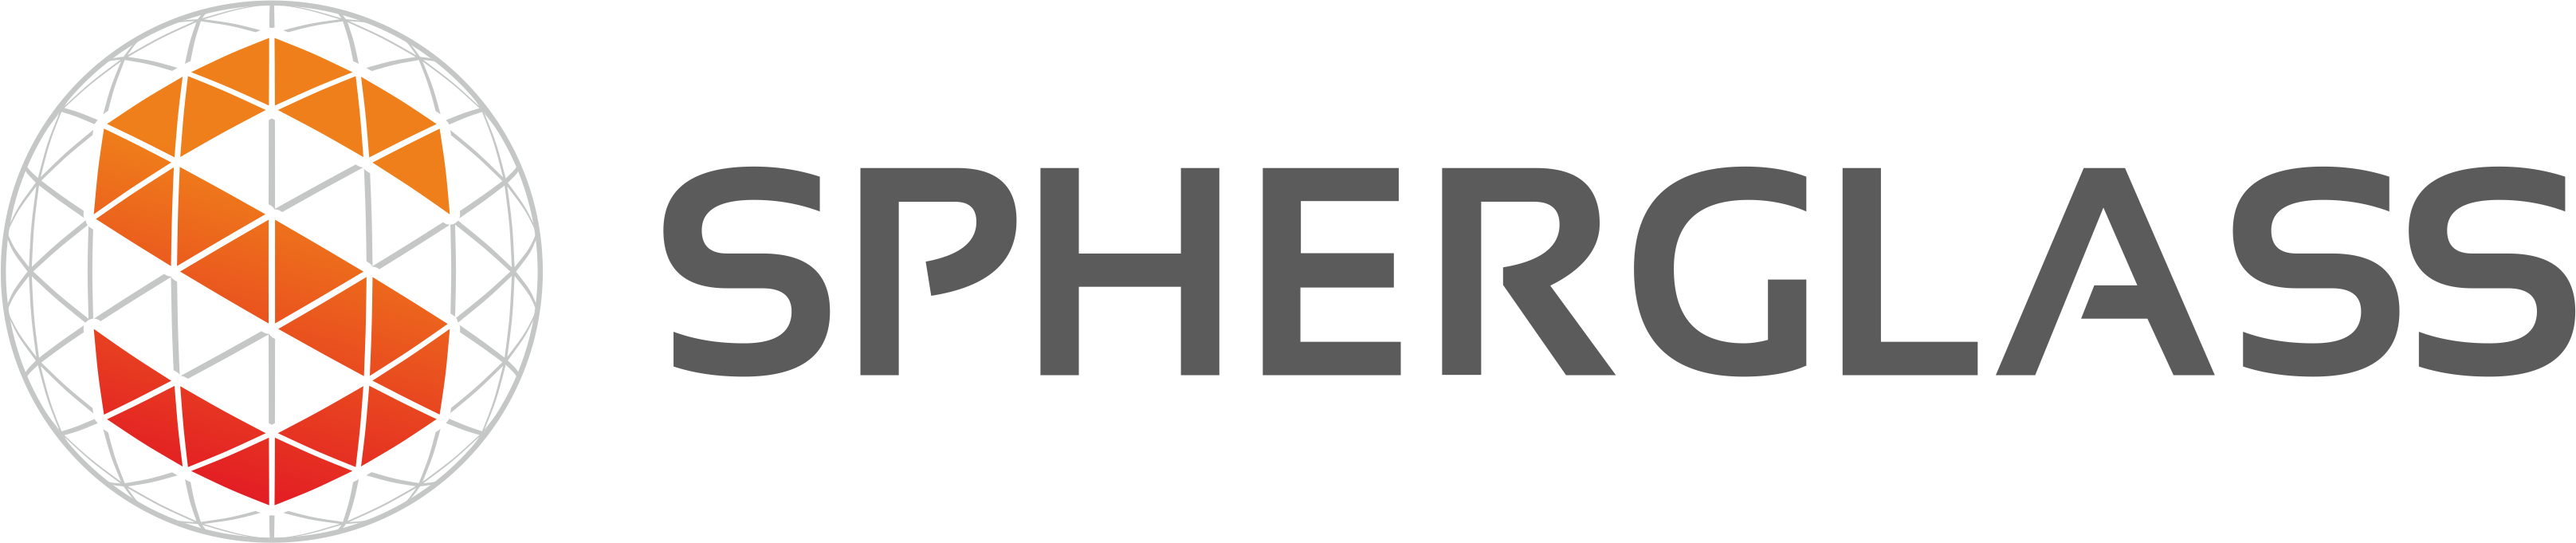 Spherglass Logo